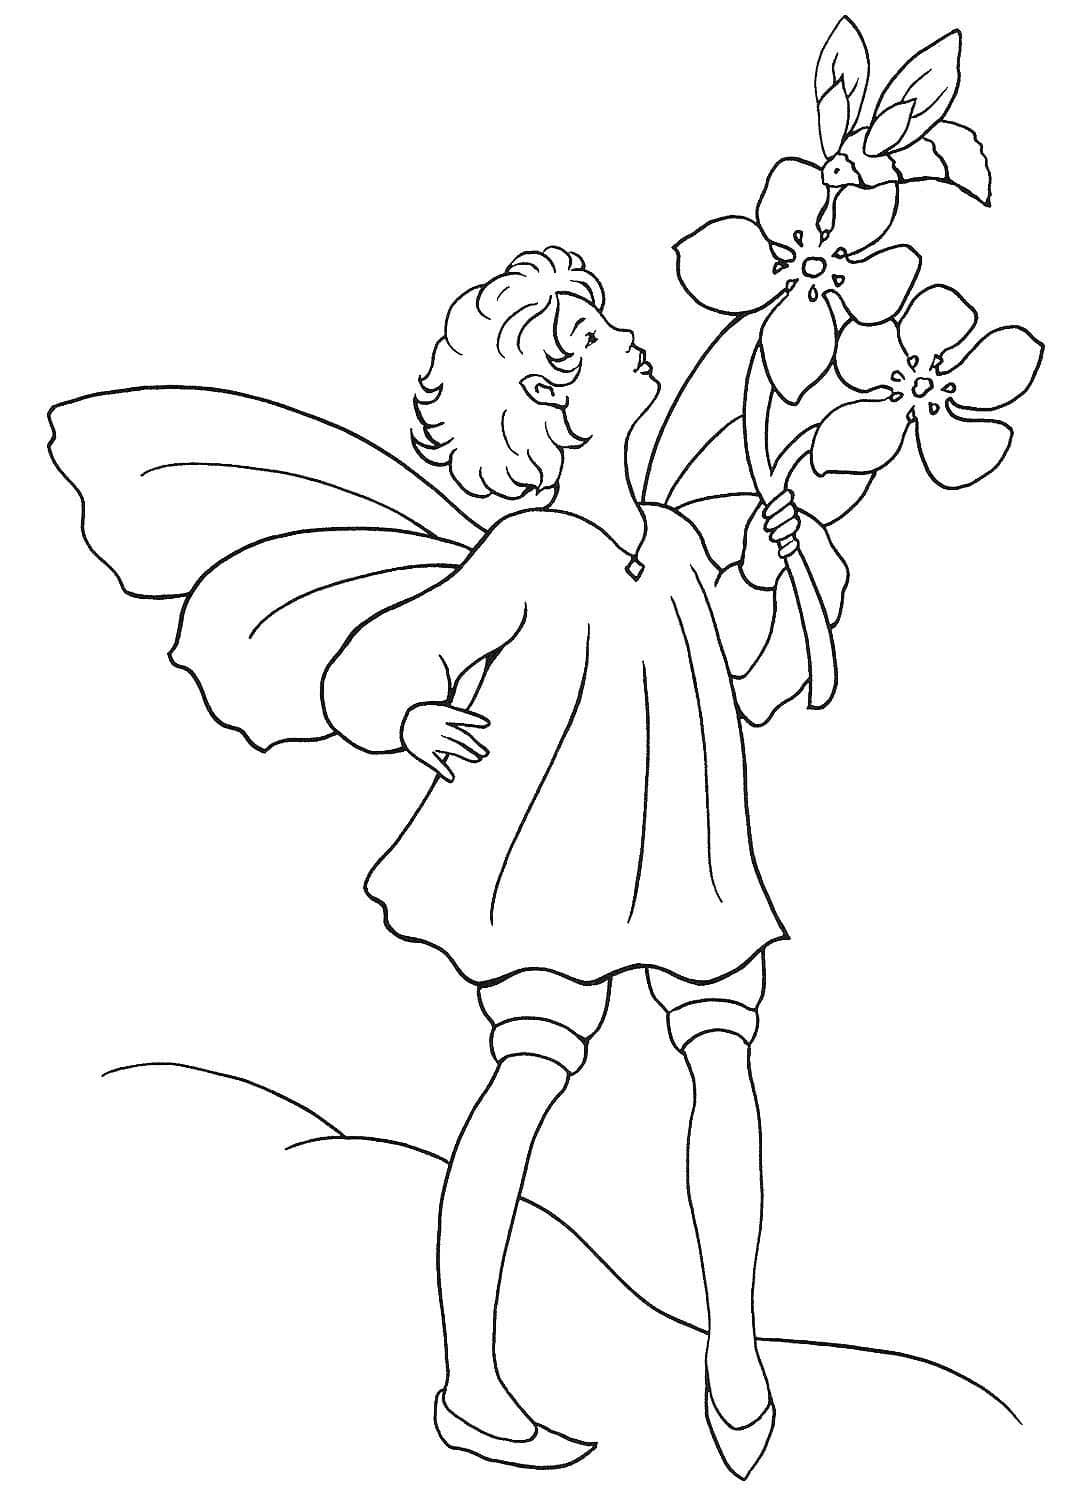 Elfe et Fleurs coloring page